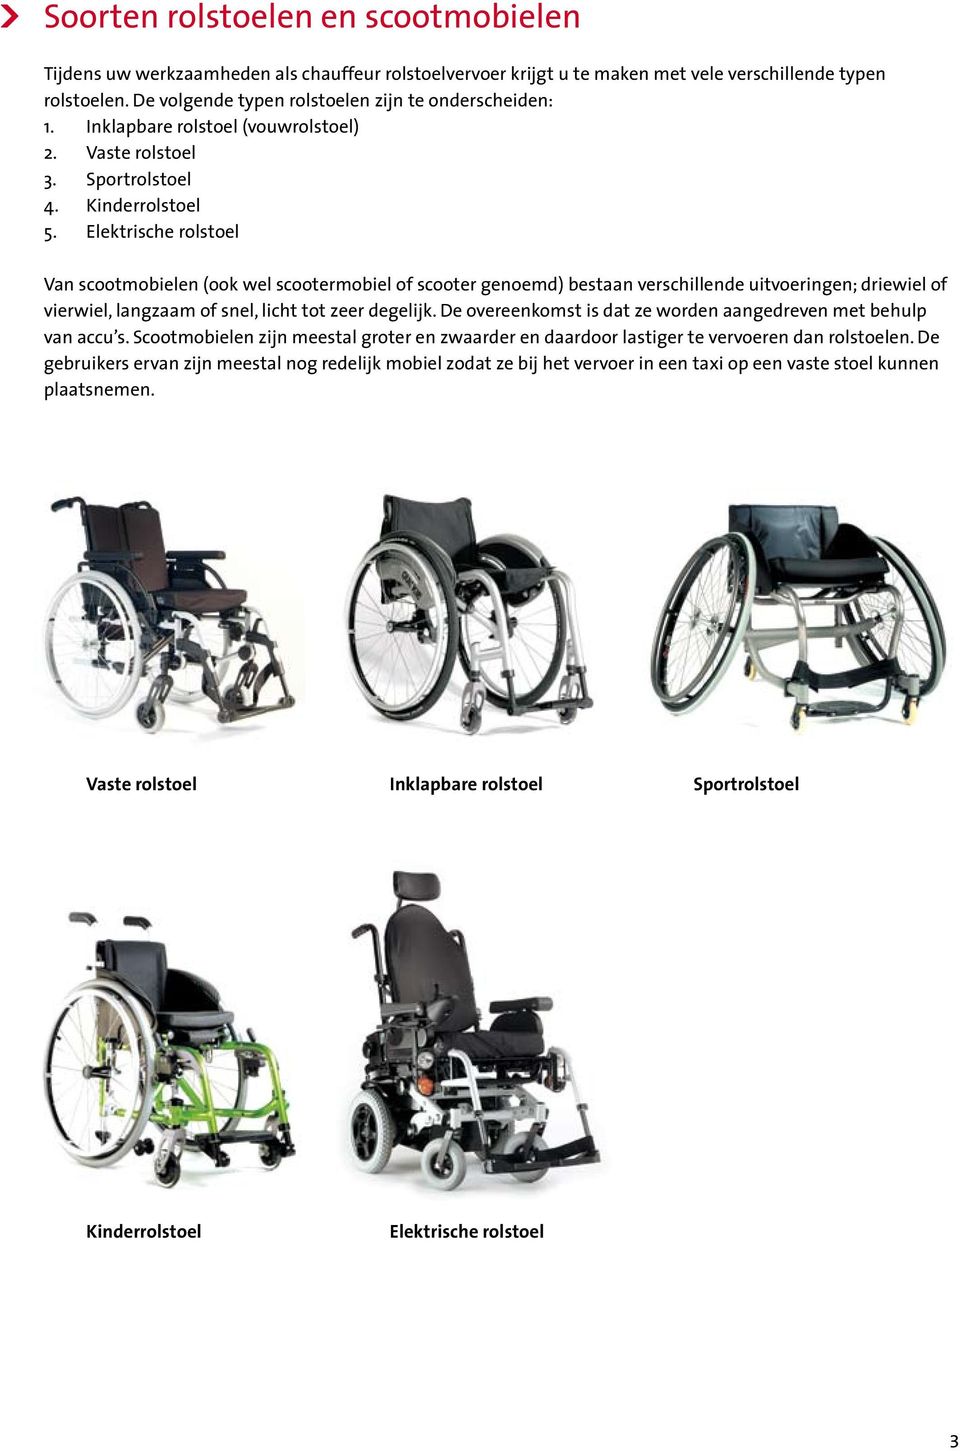 Elektrische rolstoel Van scootmobielen (ook wel scootermobiel of scooter genoemd) bestaan verschillende uitvoeringen; driewiel of vierwiel, langzaam of snel, licht tot zeer degelijk.